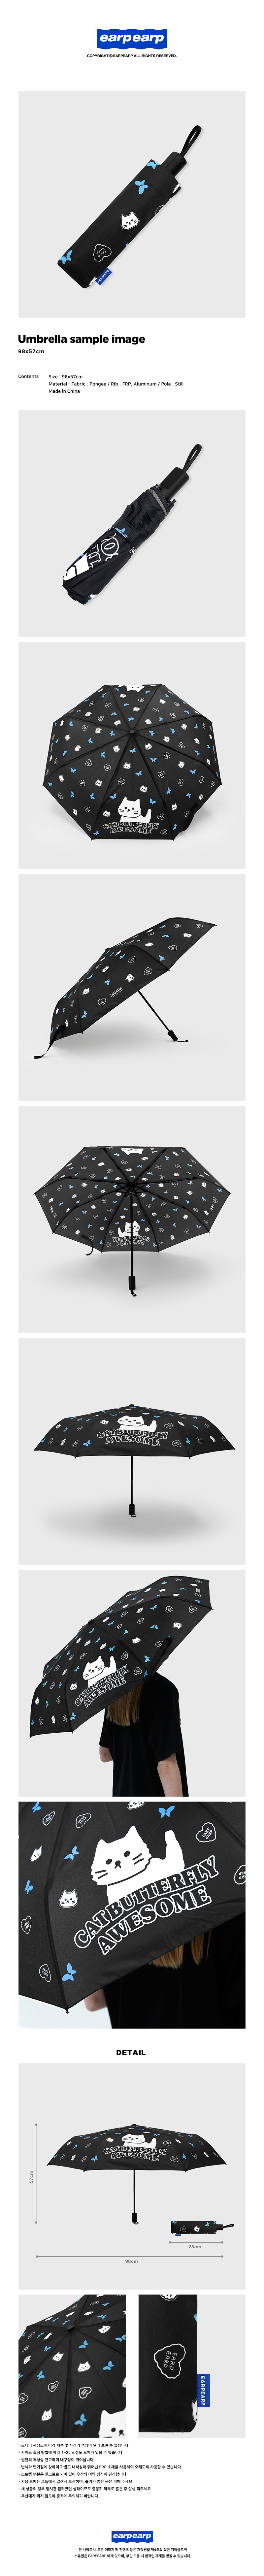  Awesome chichi-black(우산)  25,000원 - 어프어프 패션잡화, 양/우산, 양우산, 자동3단/5단 바보사랑  Awesome chichi-black(우산)  25,000원 - 어프어프 패션잡화, 양/우산, 양우산, 자동3단/5단 바보사랑